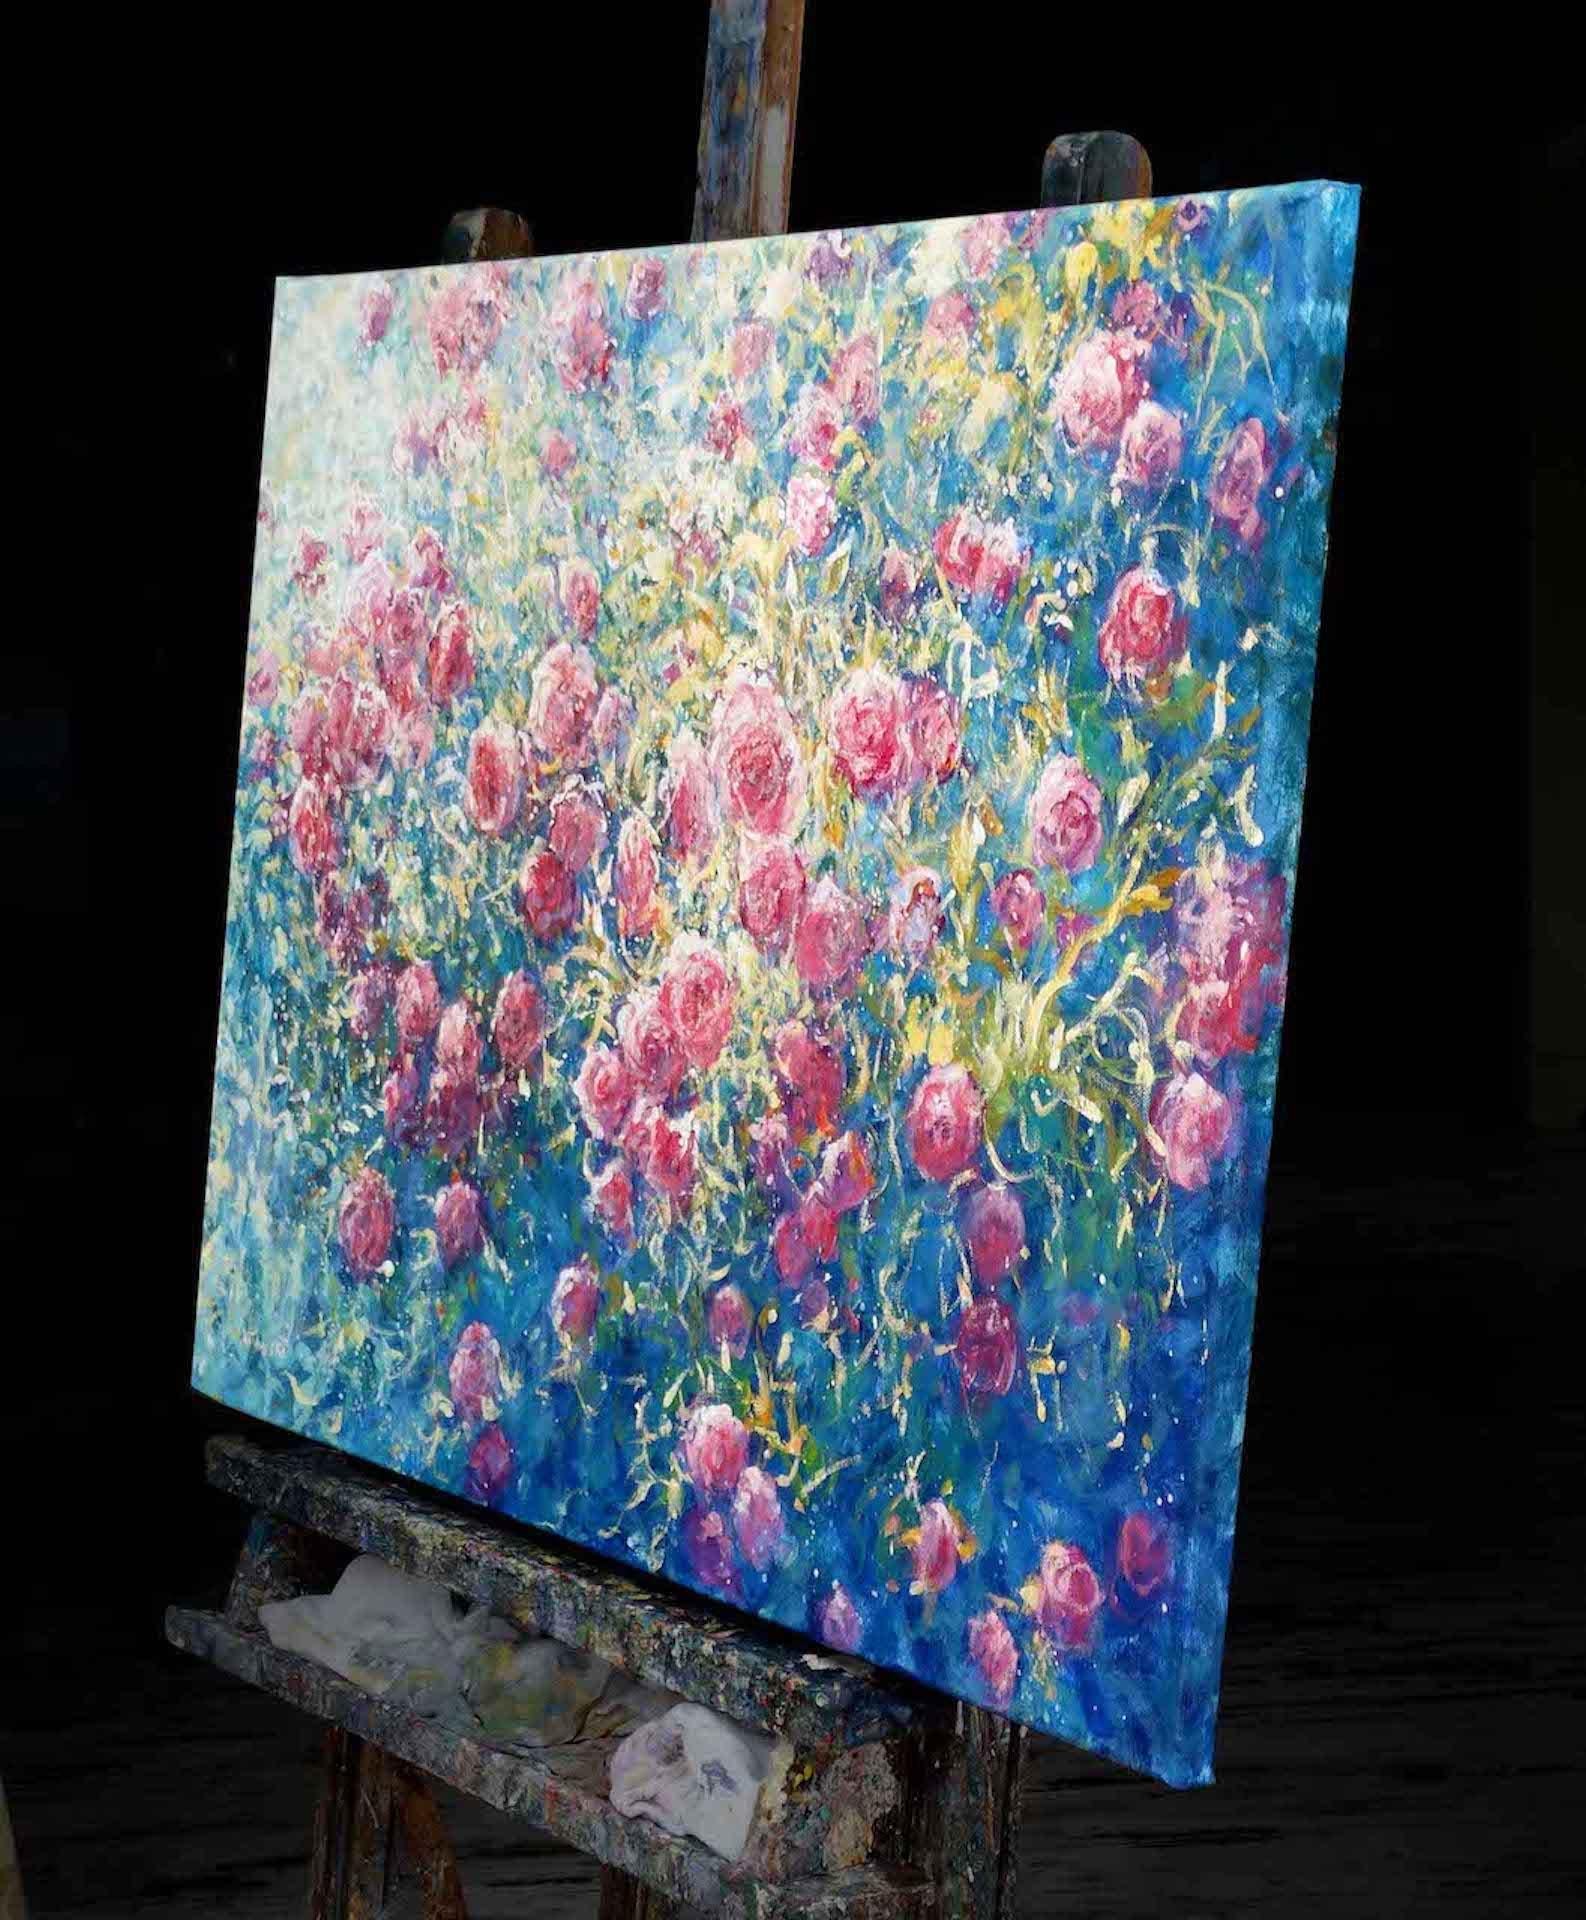 Abundance of Roses, Original-Landschaftsgemälde  Impressionistisches Gemälde (Grau), Still-Life Painting, von Mariusz Kaldowski